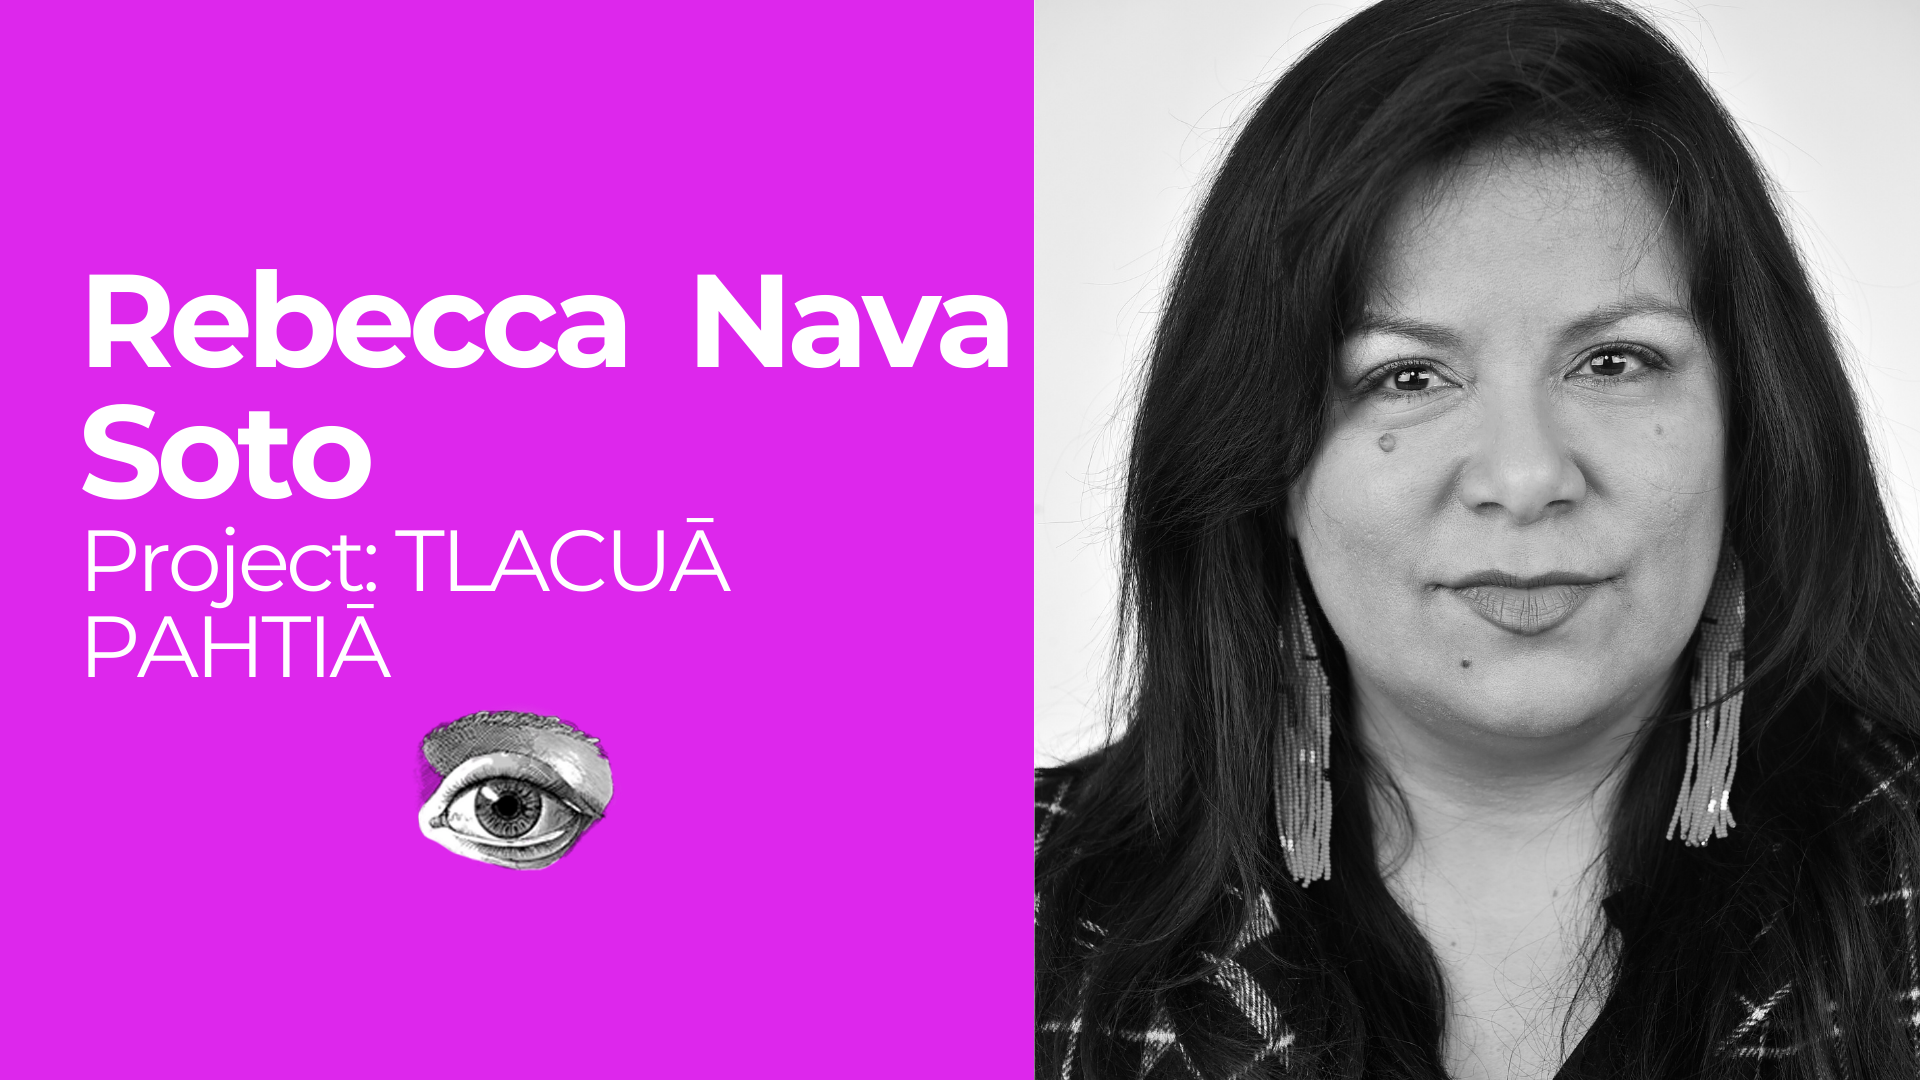 Rebecca Nava Soto